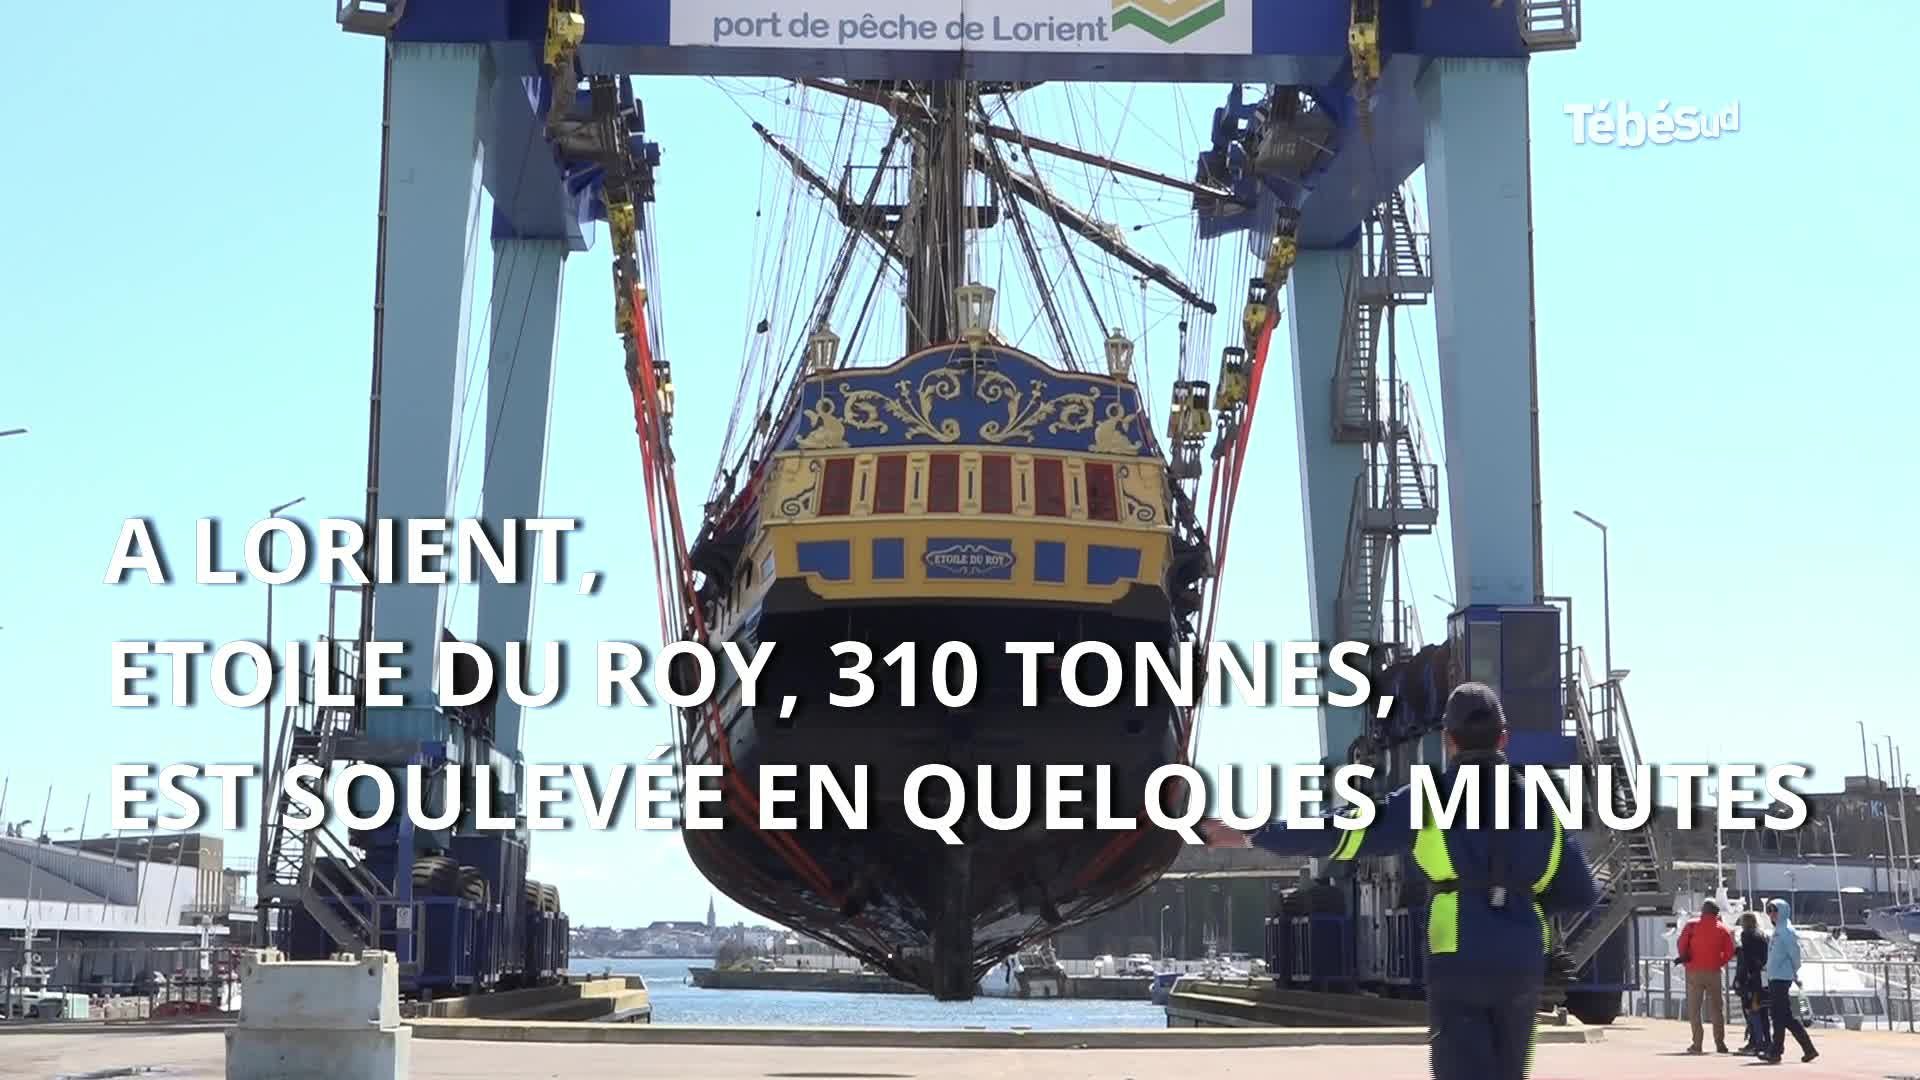 Lorient : escale technique pour Etoile du Roy avant un tournage en Espagne (Tébéo-TébéSud)